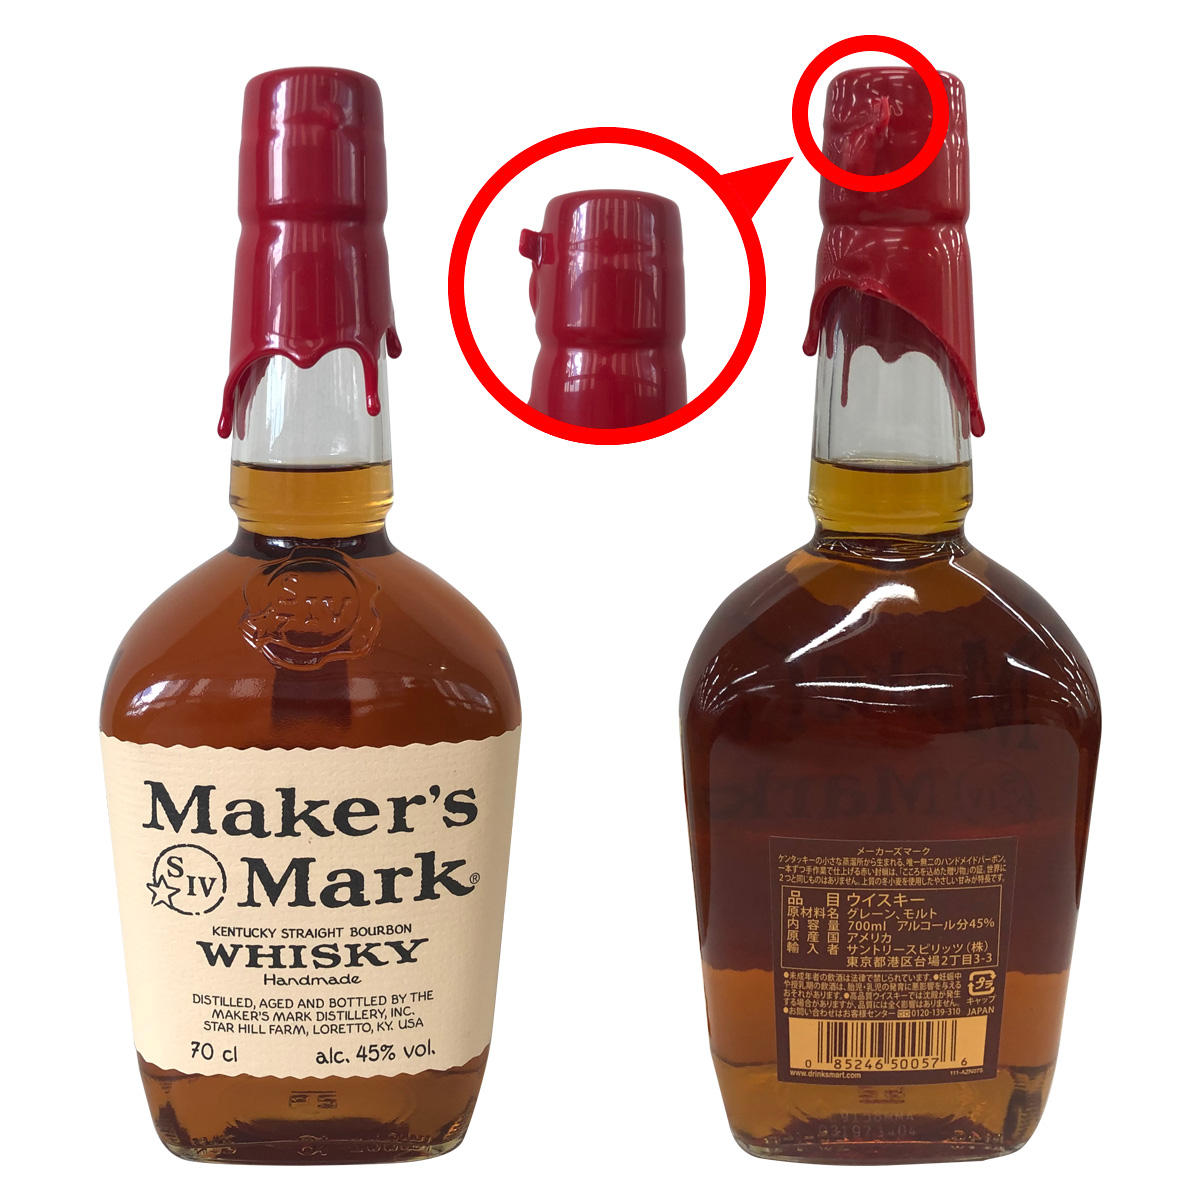 Maker's Mark(メーカーズマーク)』の開け方を教えてください。 サントリーお客様センター